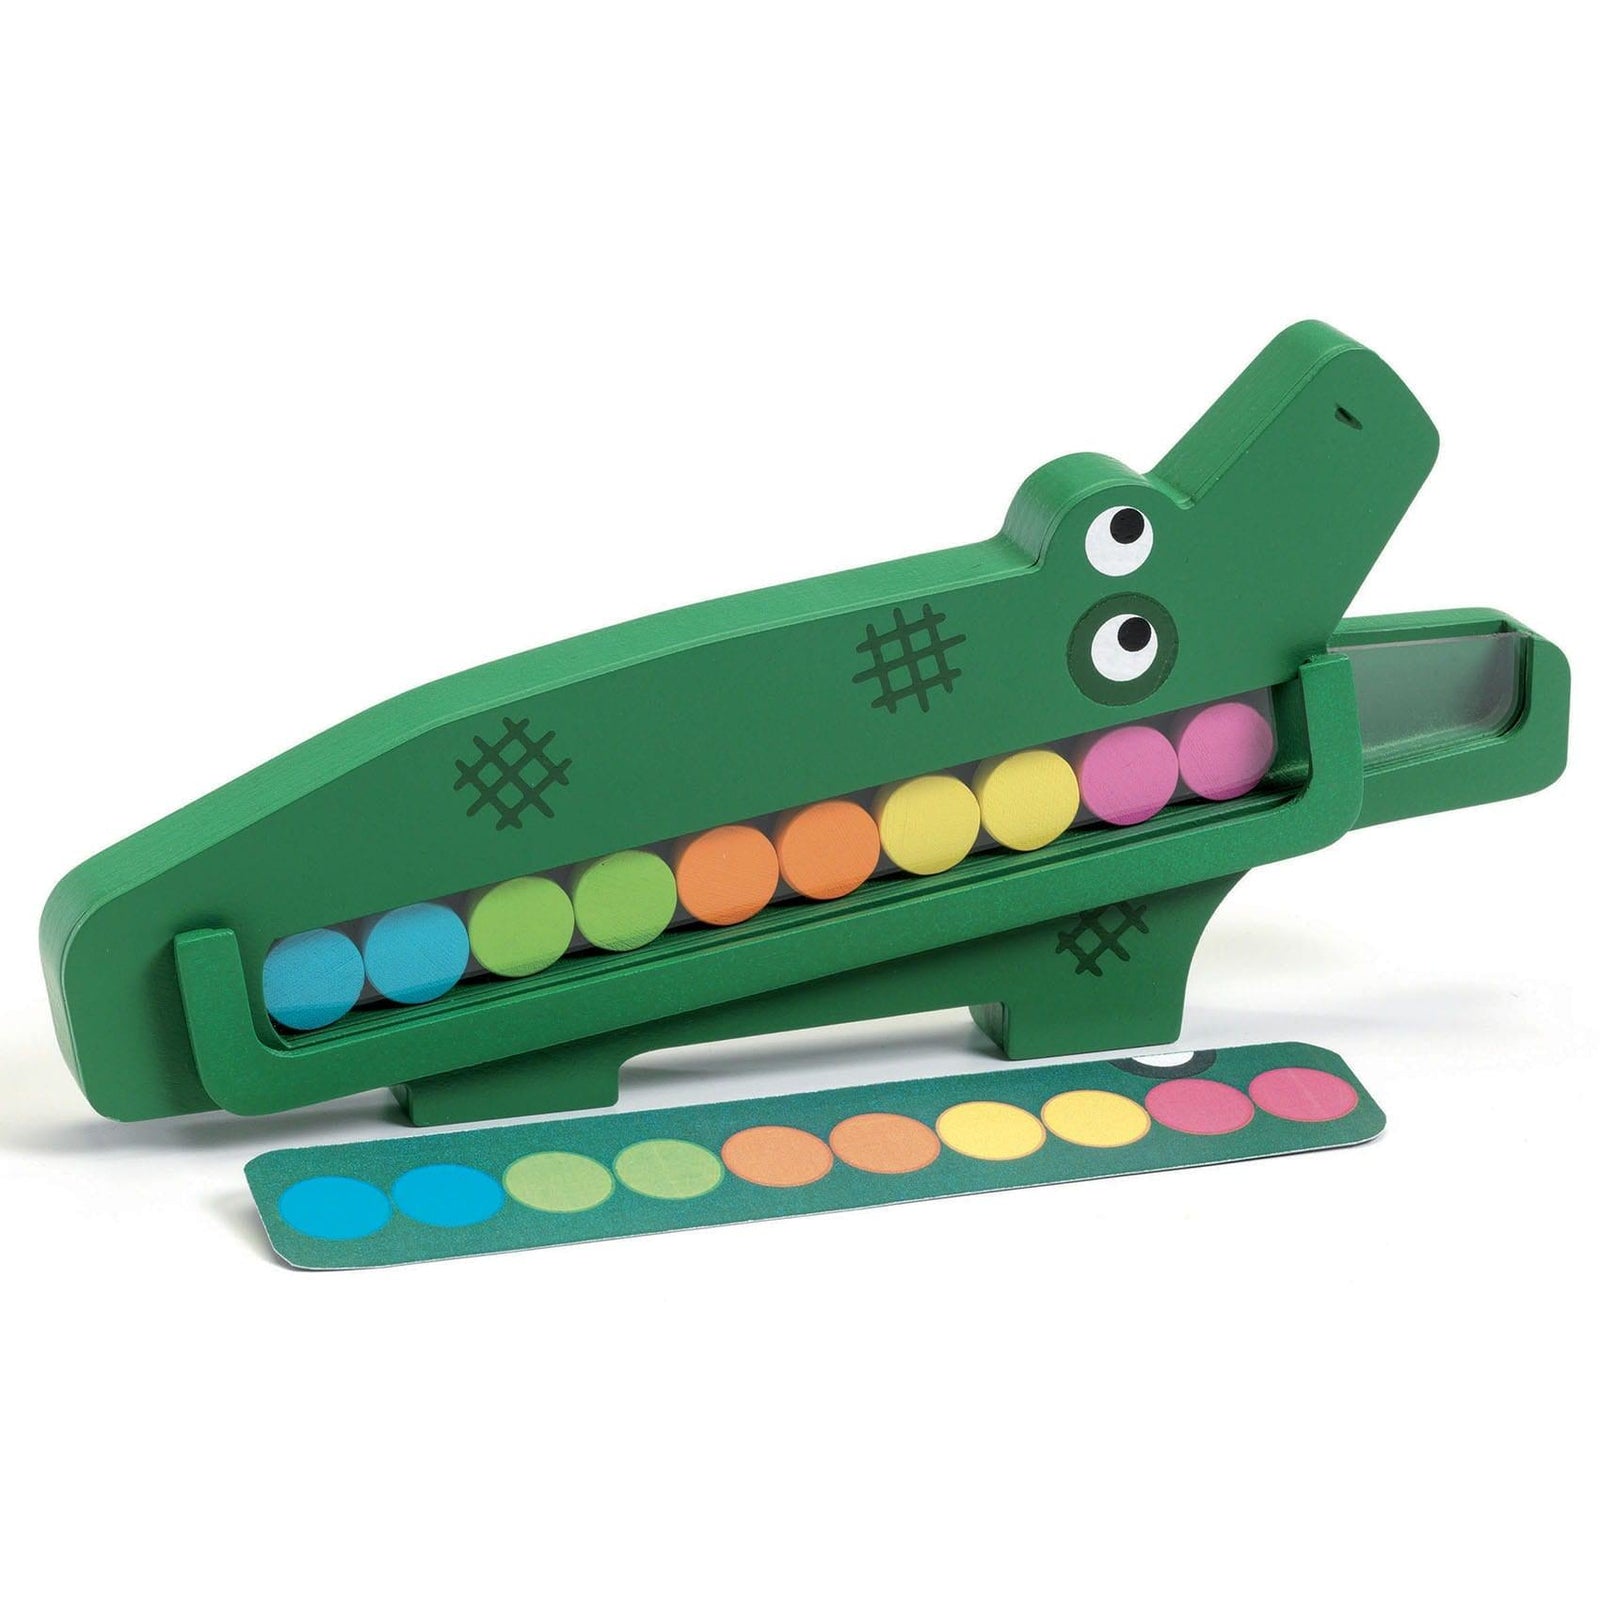 Gra edukacyjna drewniany krokodyl Crococroc - zabawa z kolorami dla dzieci  3+